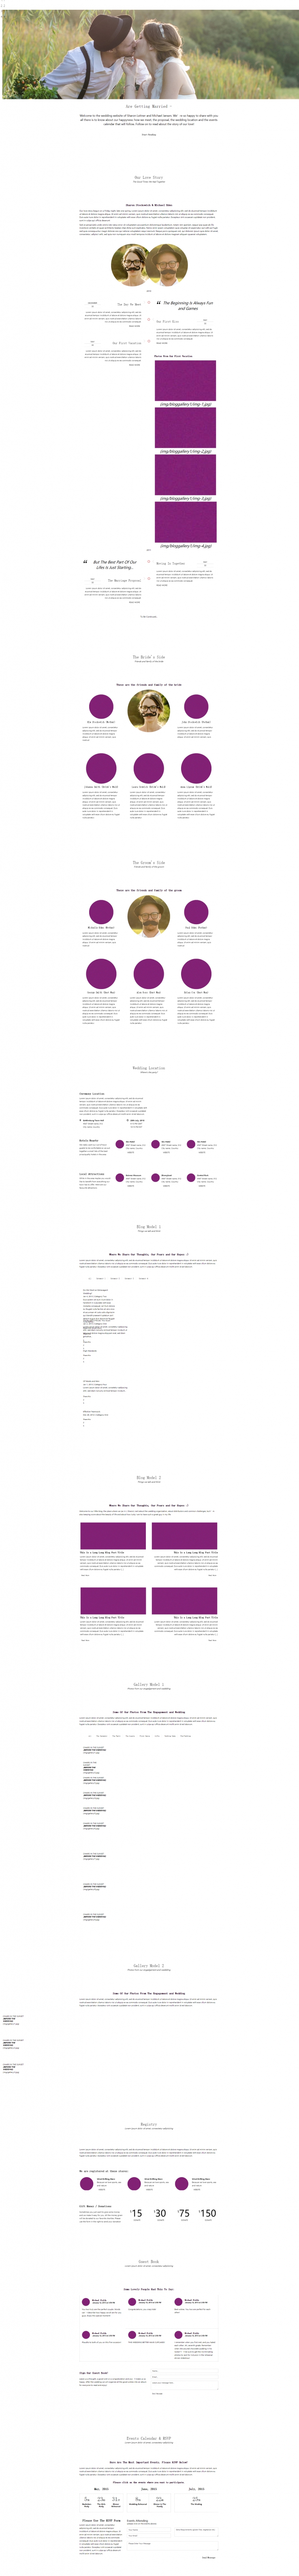 紫色大气风格的恋爱婚庆公司网页模板下载